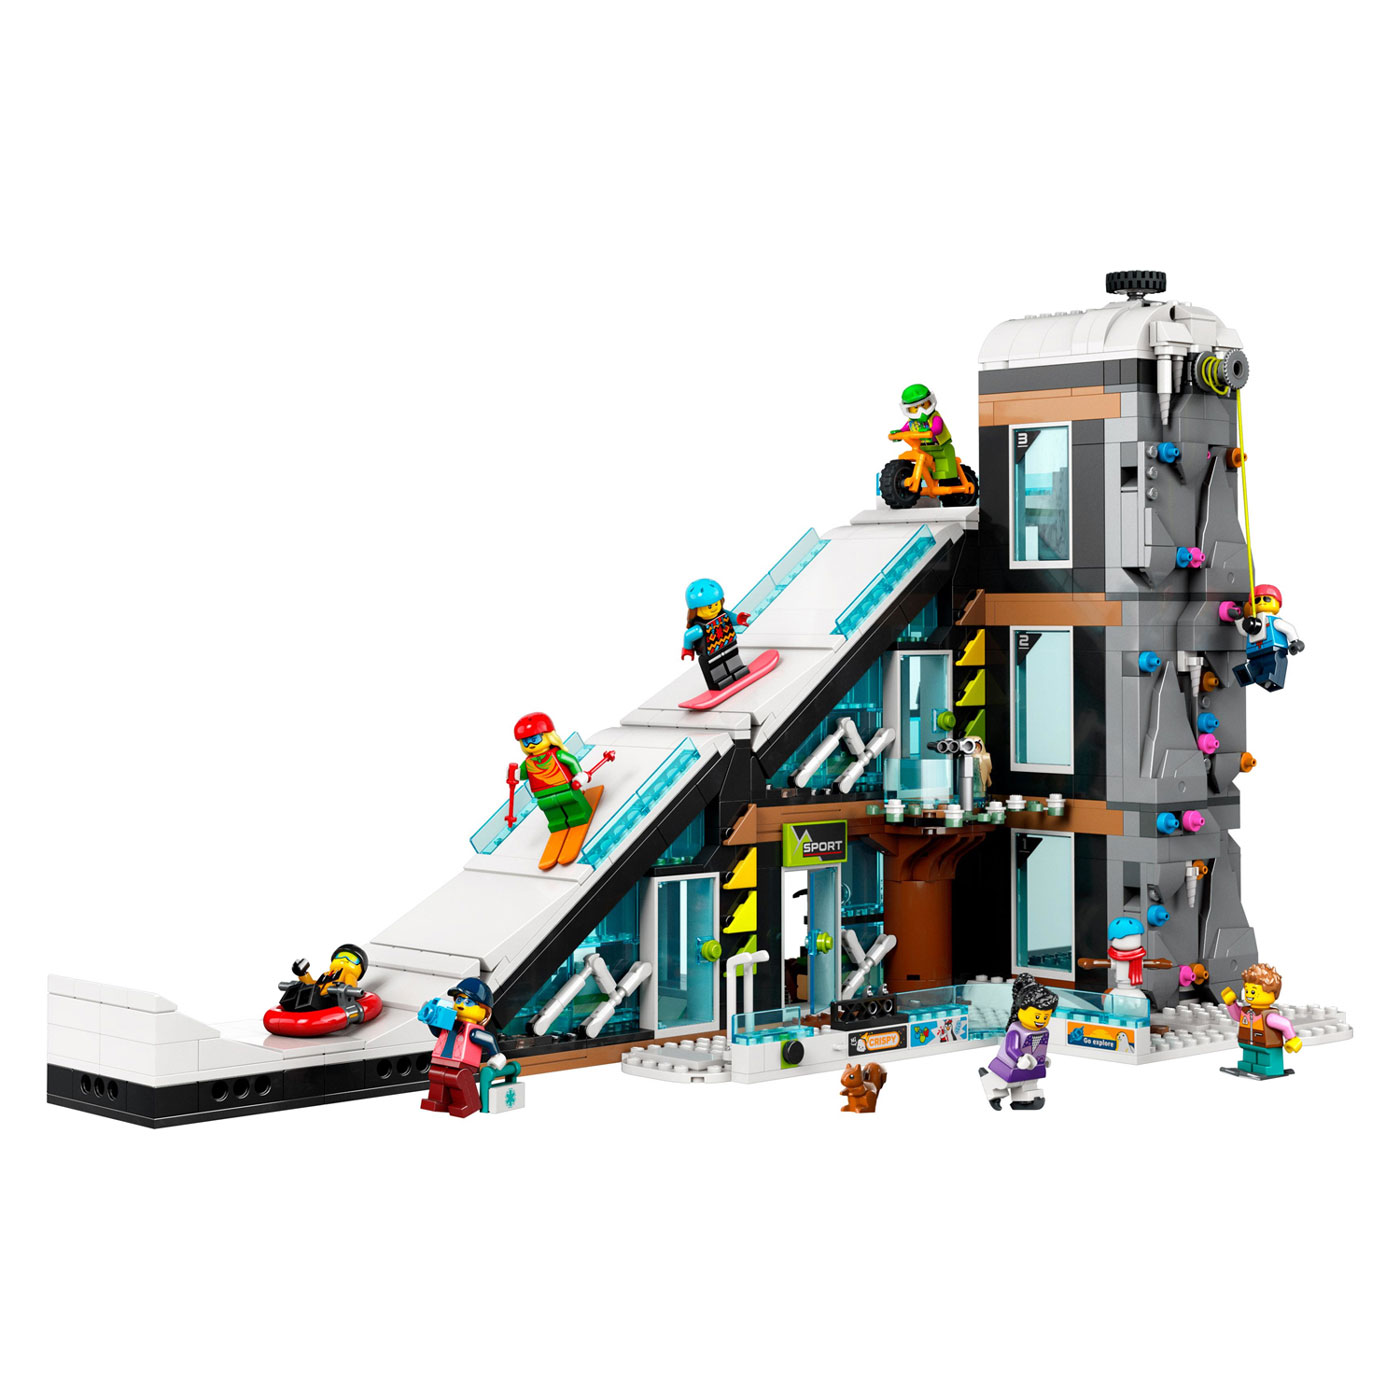 LEGO City 60366 Ski- und Kletterzentrum